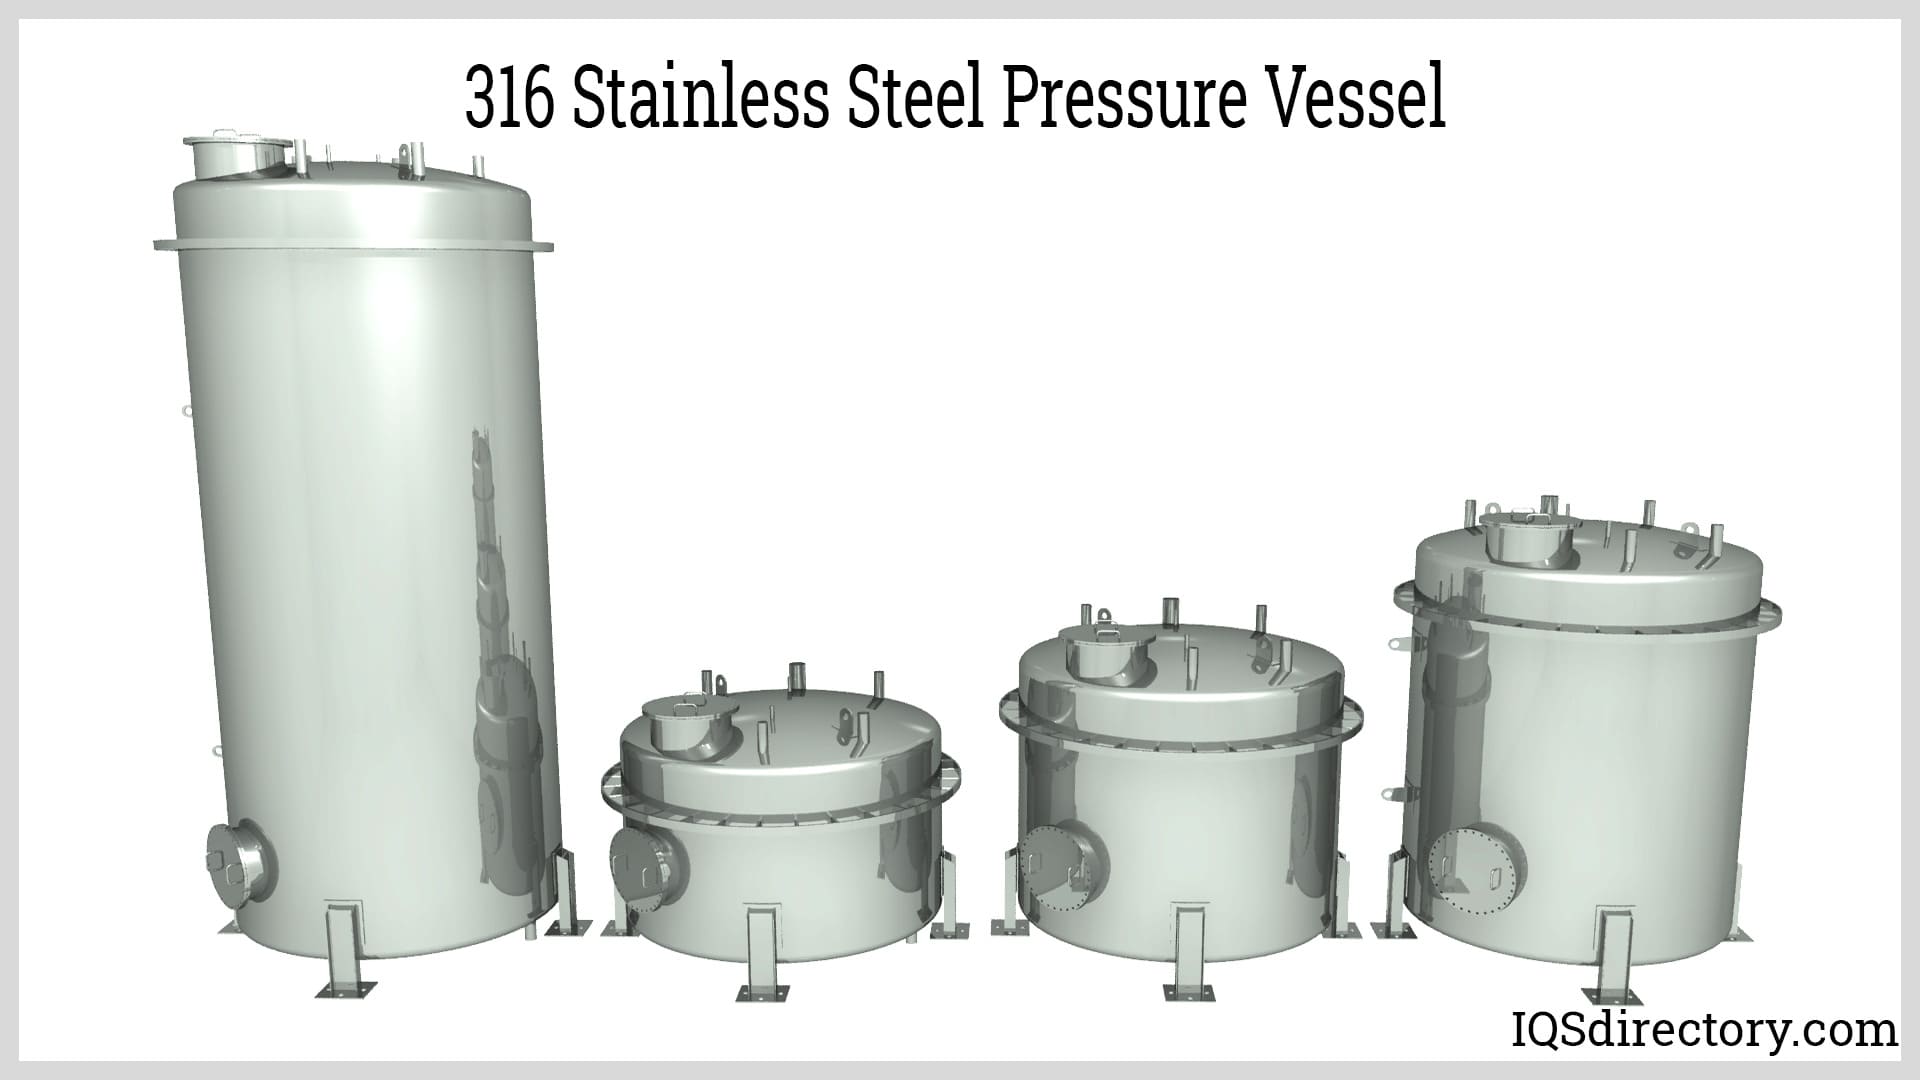 316 Stainless Steel Pressure Vessel